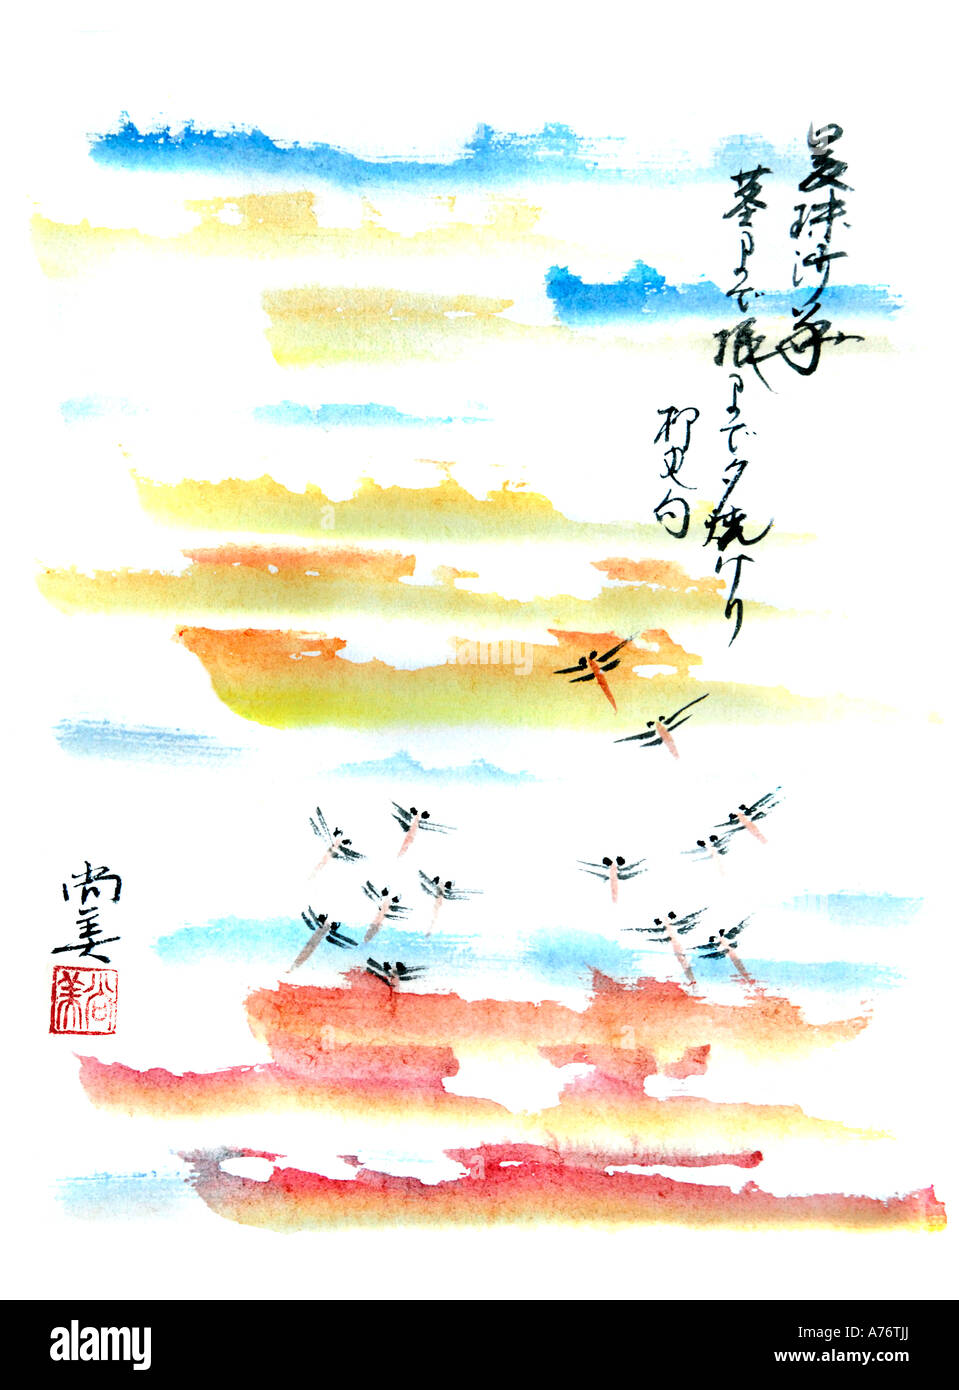 Dipinto a mano la calligrafia giapponese arte da Naomi Saso della prefettura di Nara in Giappone Foto Stock